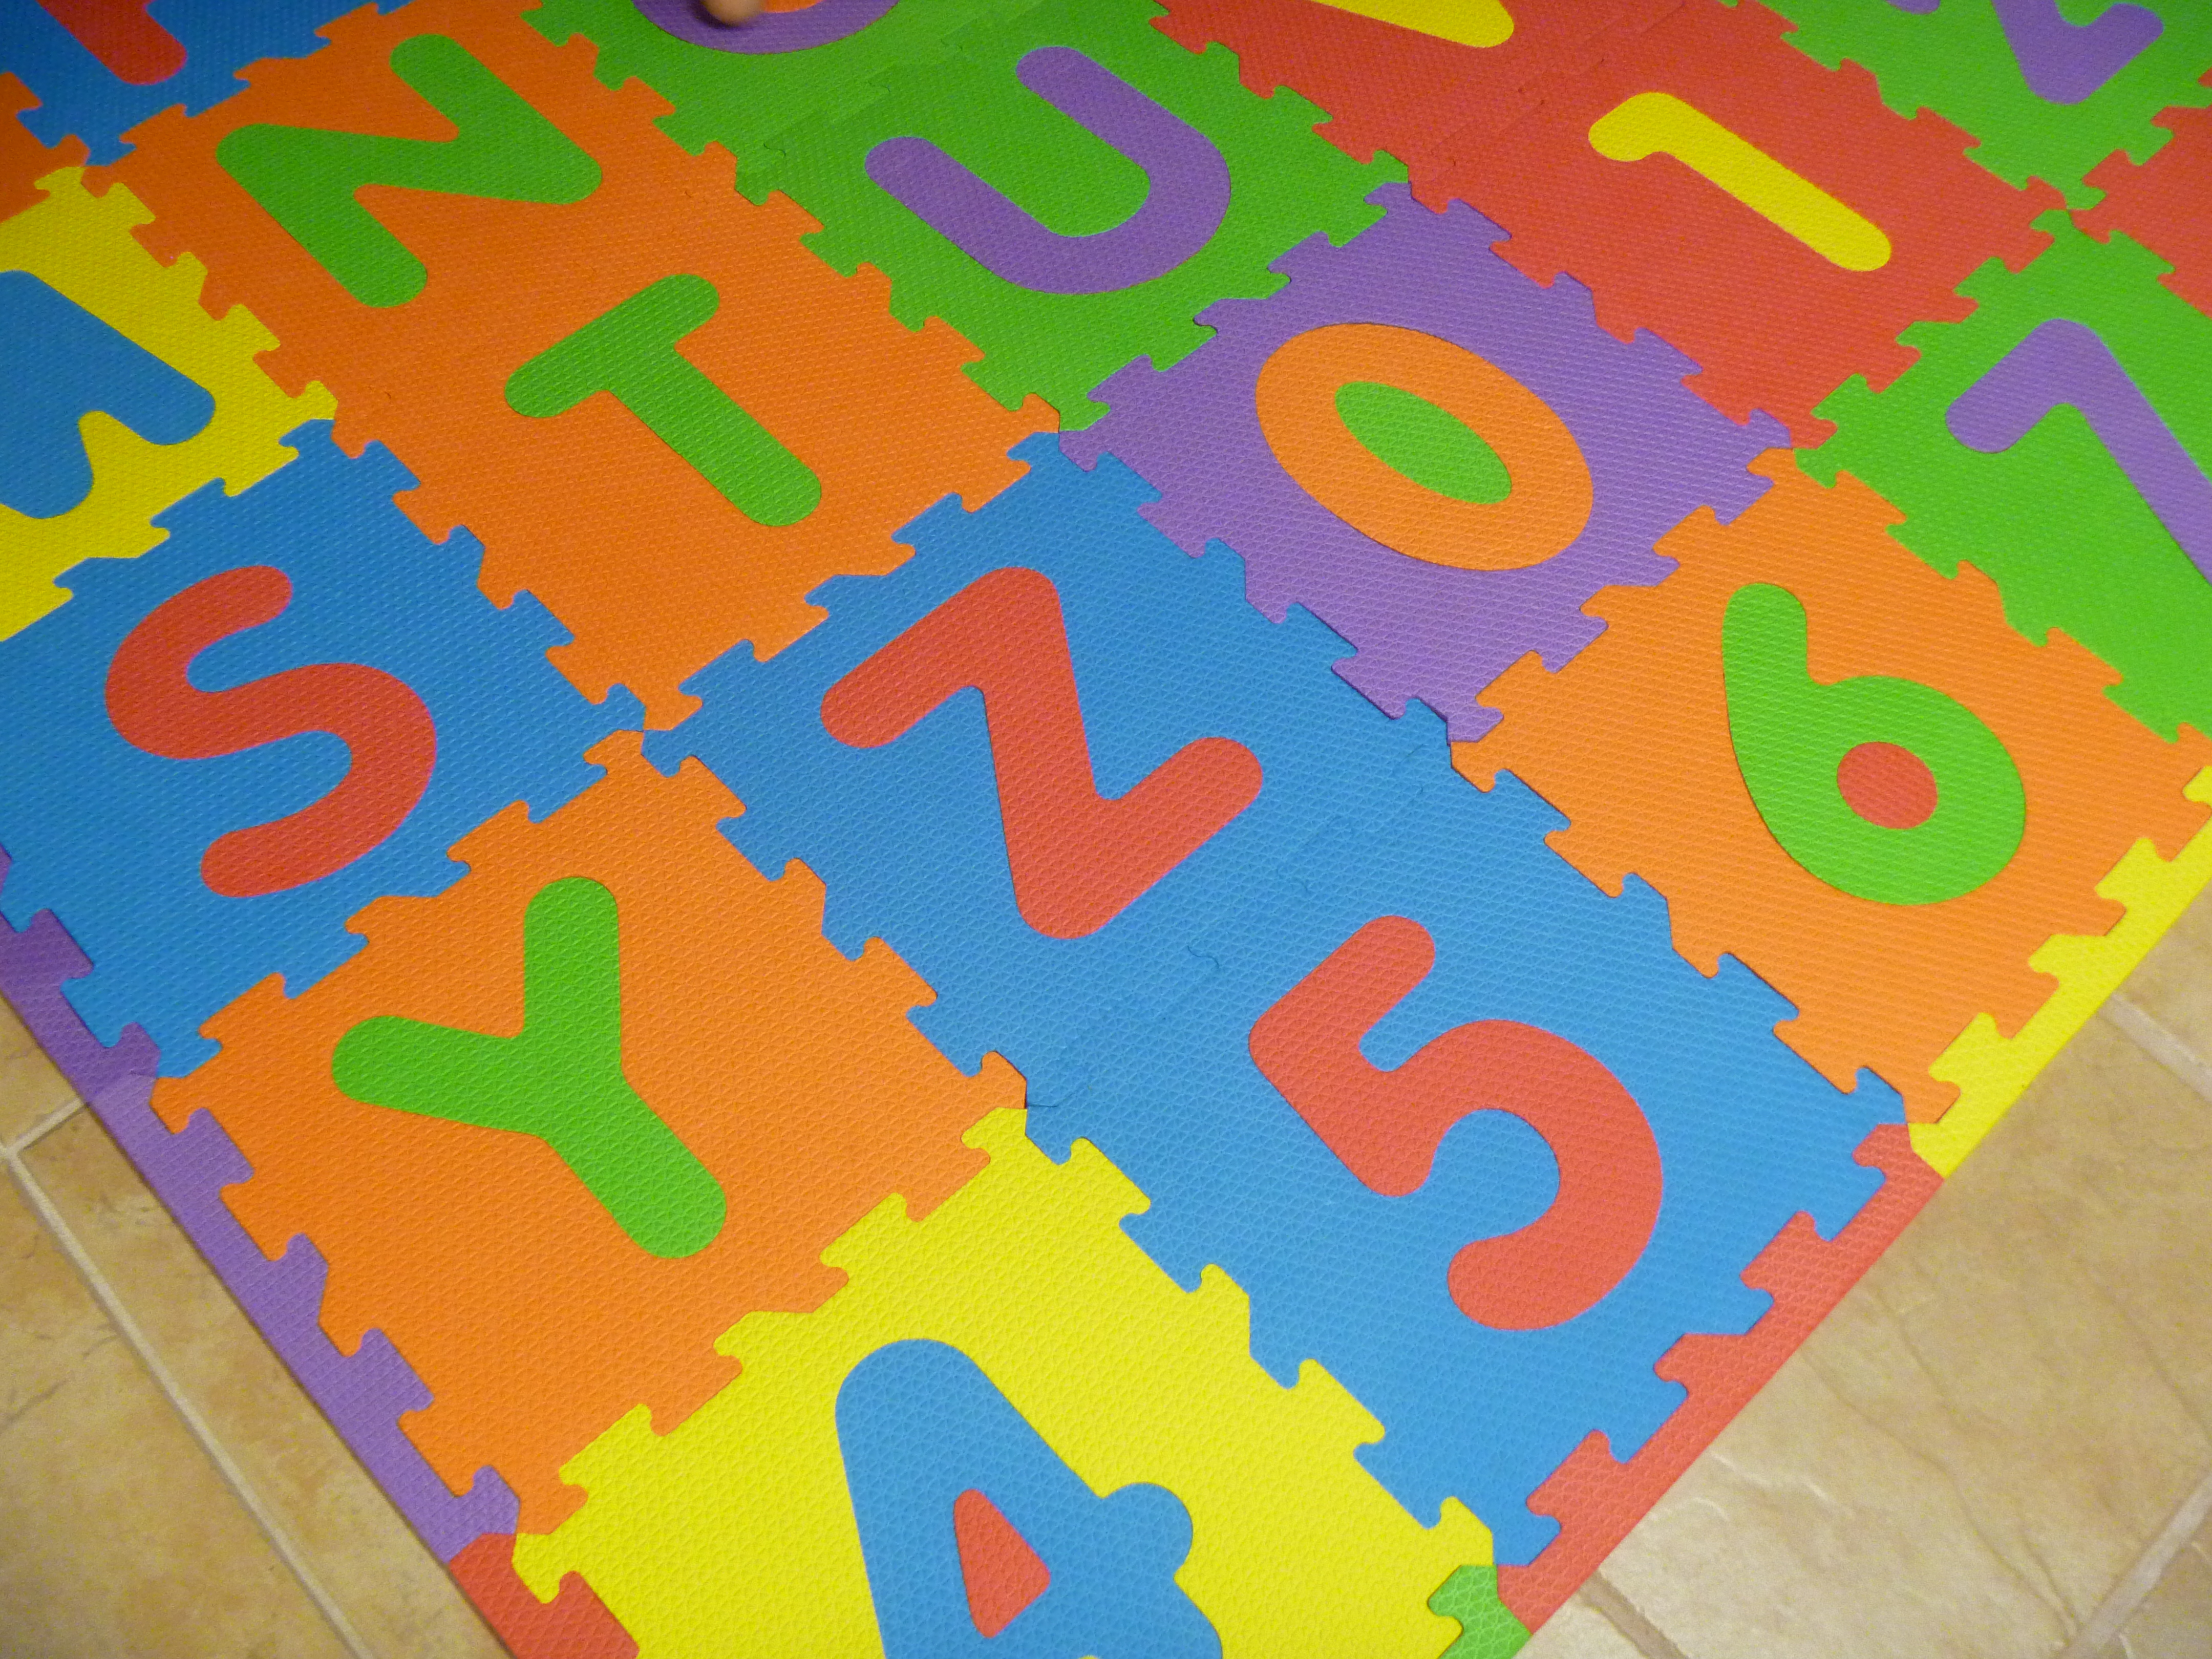 Large Foam ABC-123 Mat - Play Mat For Kids